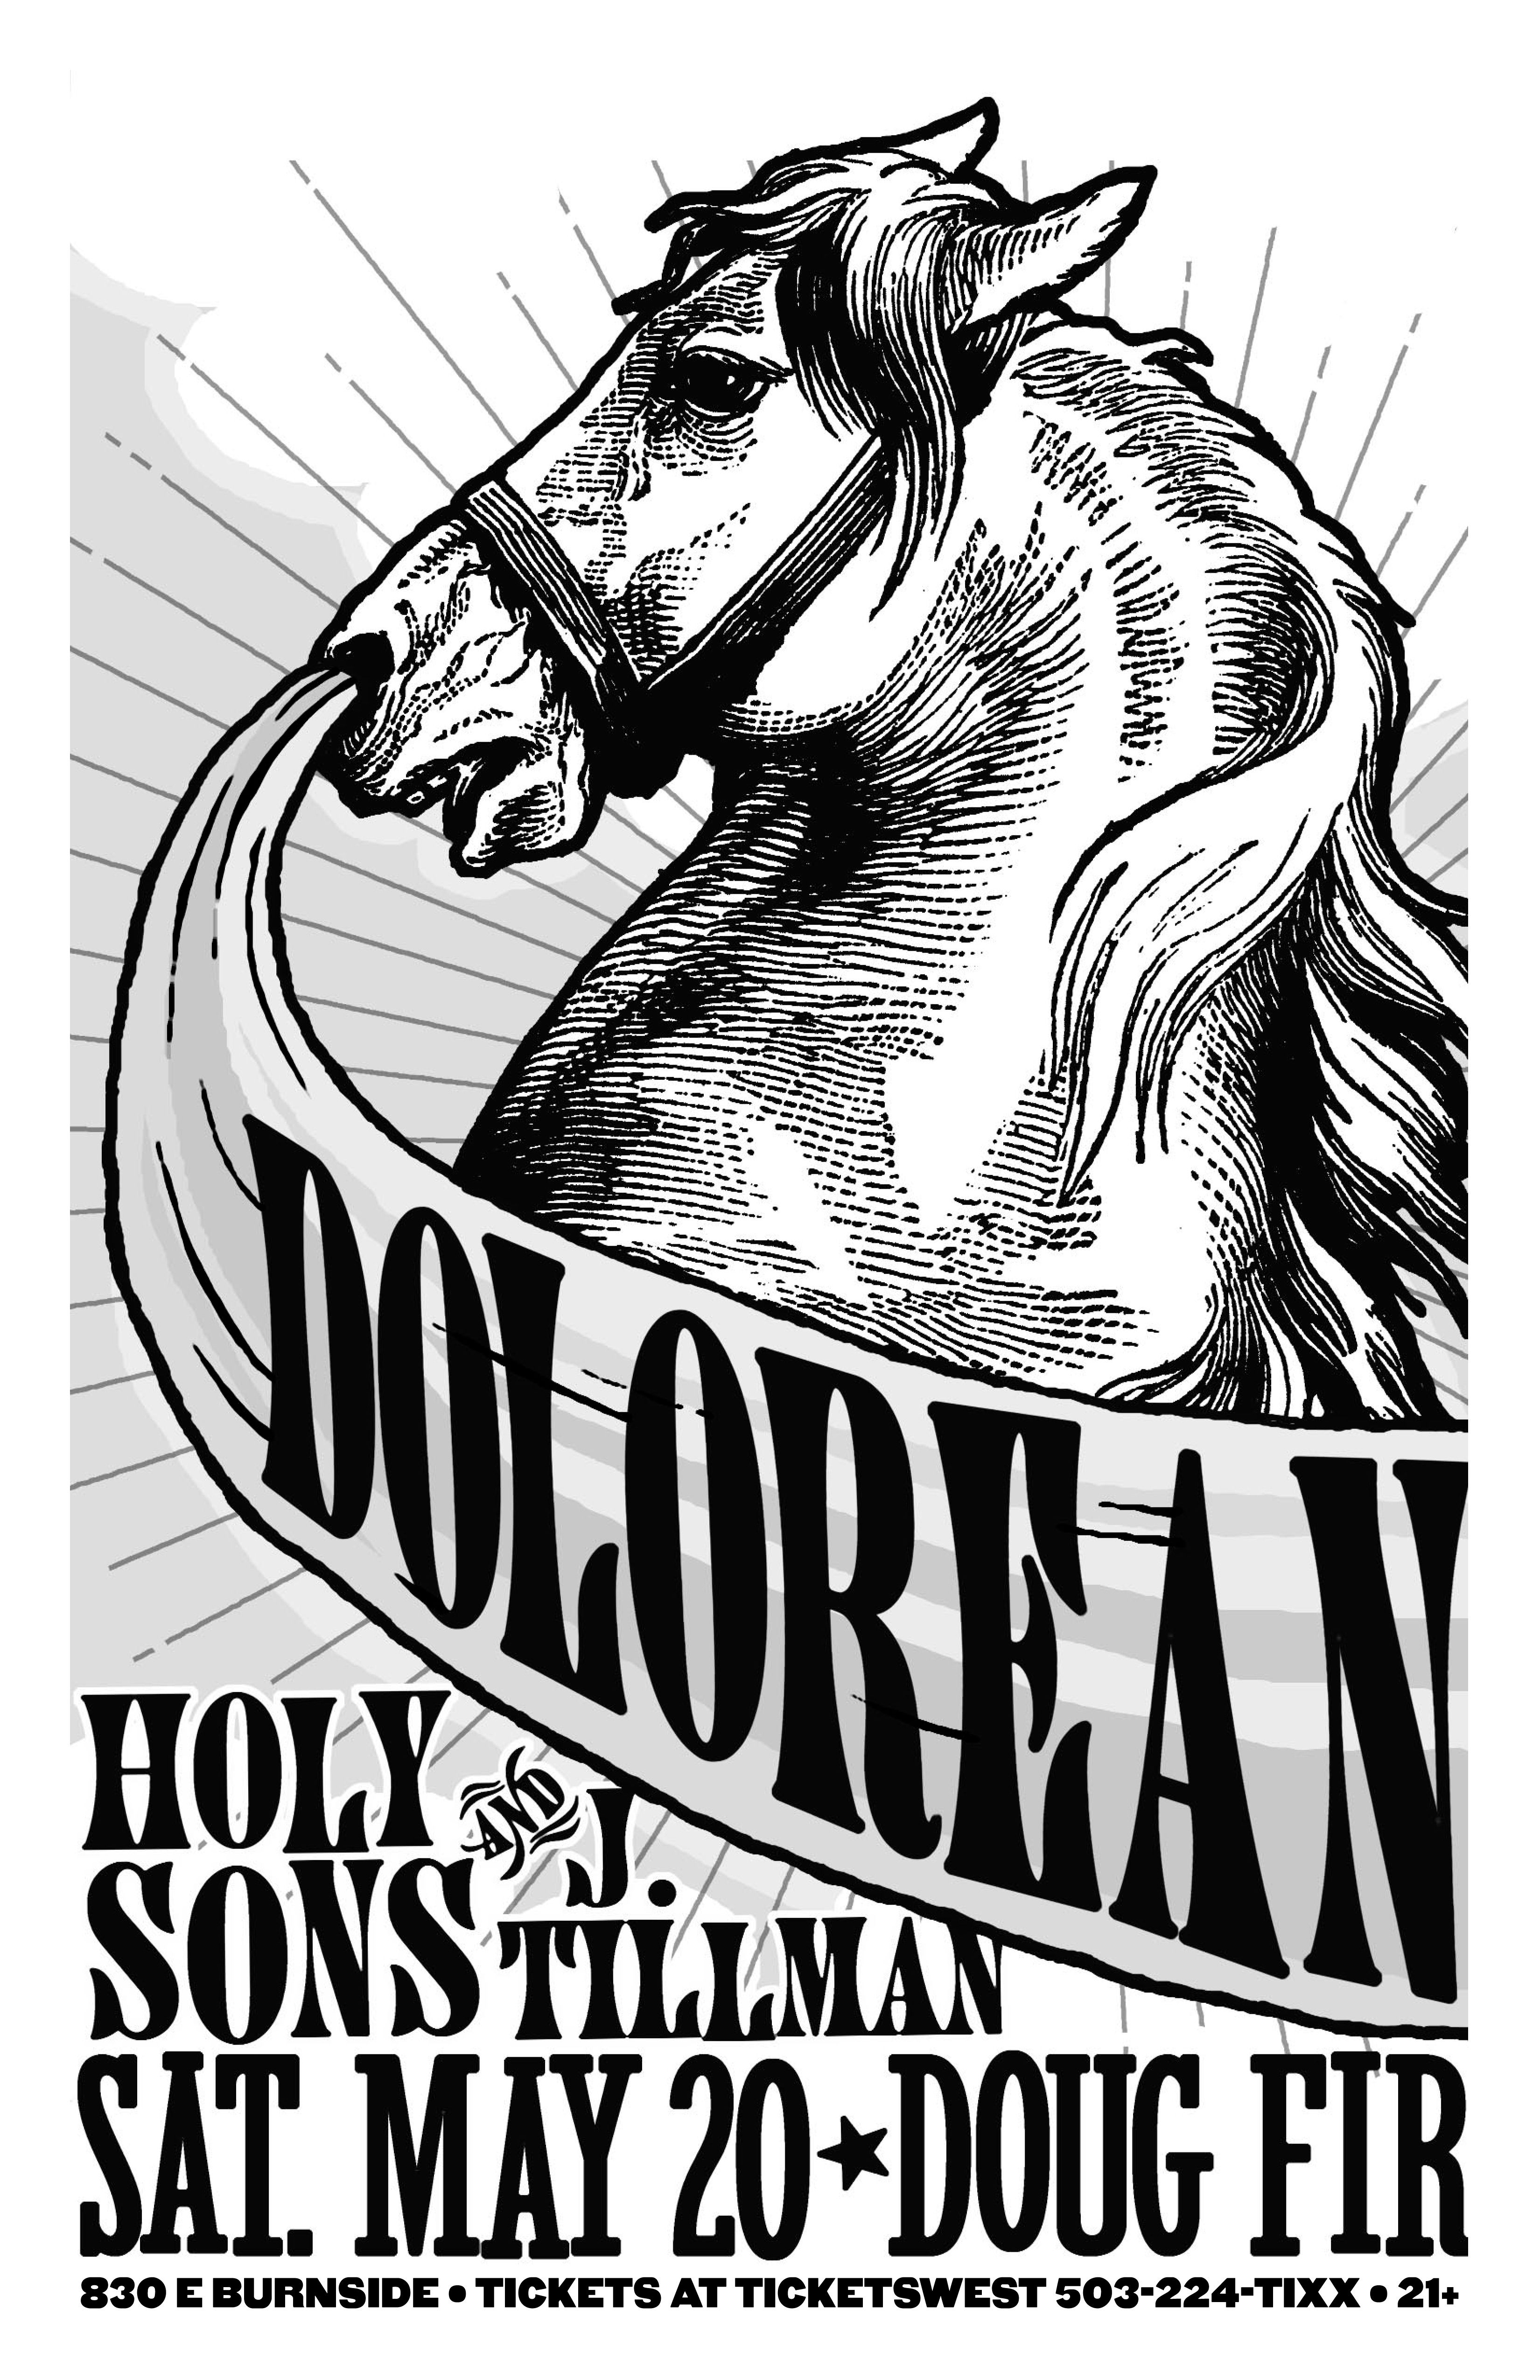 MXP-140.1 Dolorean 2006 Doug Fir  May 20 Concert Poster